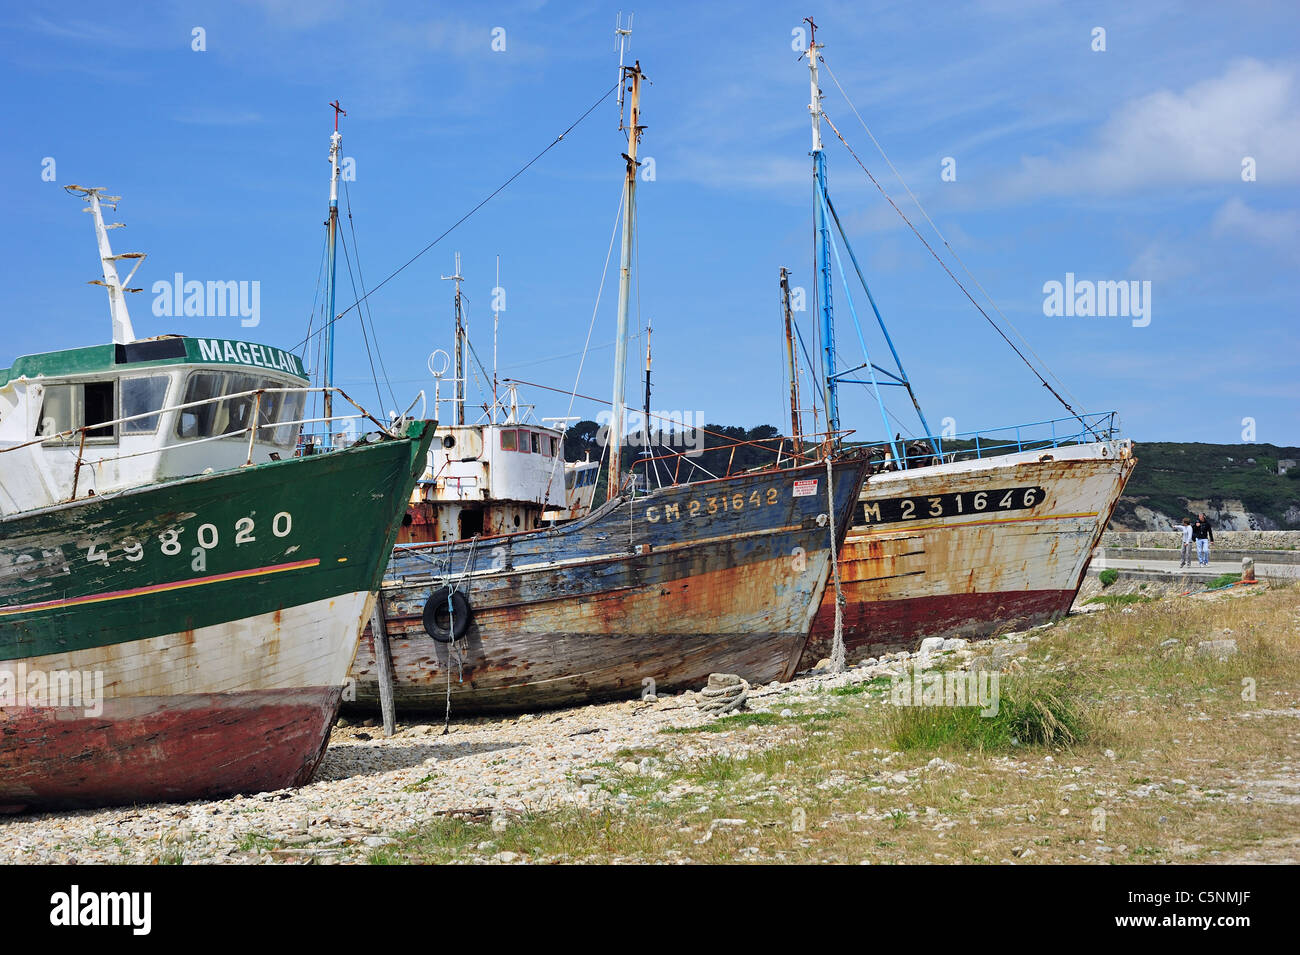 Les épaves de bateaux de pêche petit chalutier dans le port de Camaret-sur-Mer, Finistère, Bretagne, France Banque D'Images